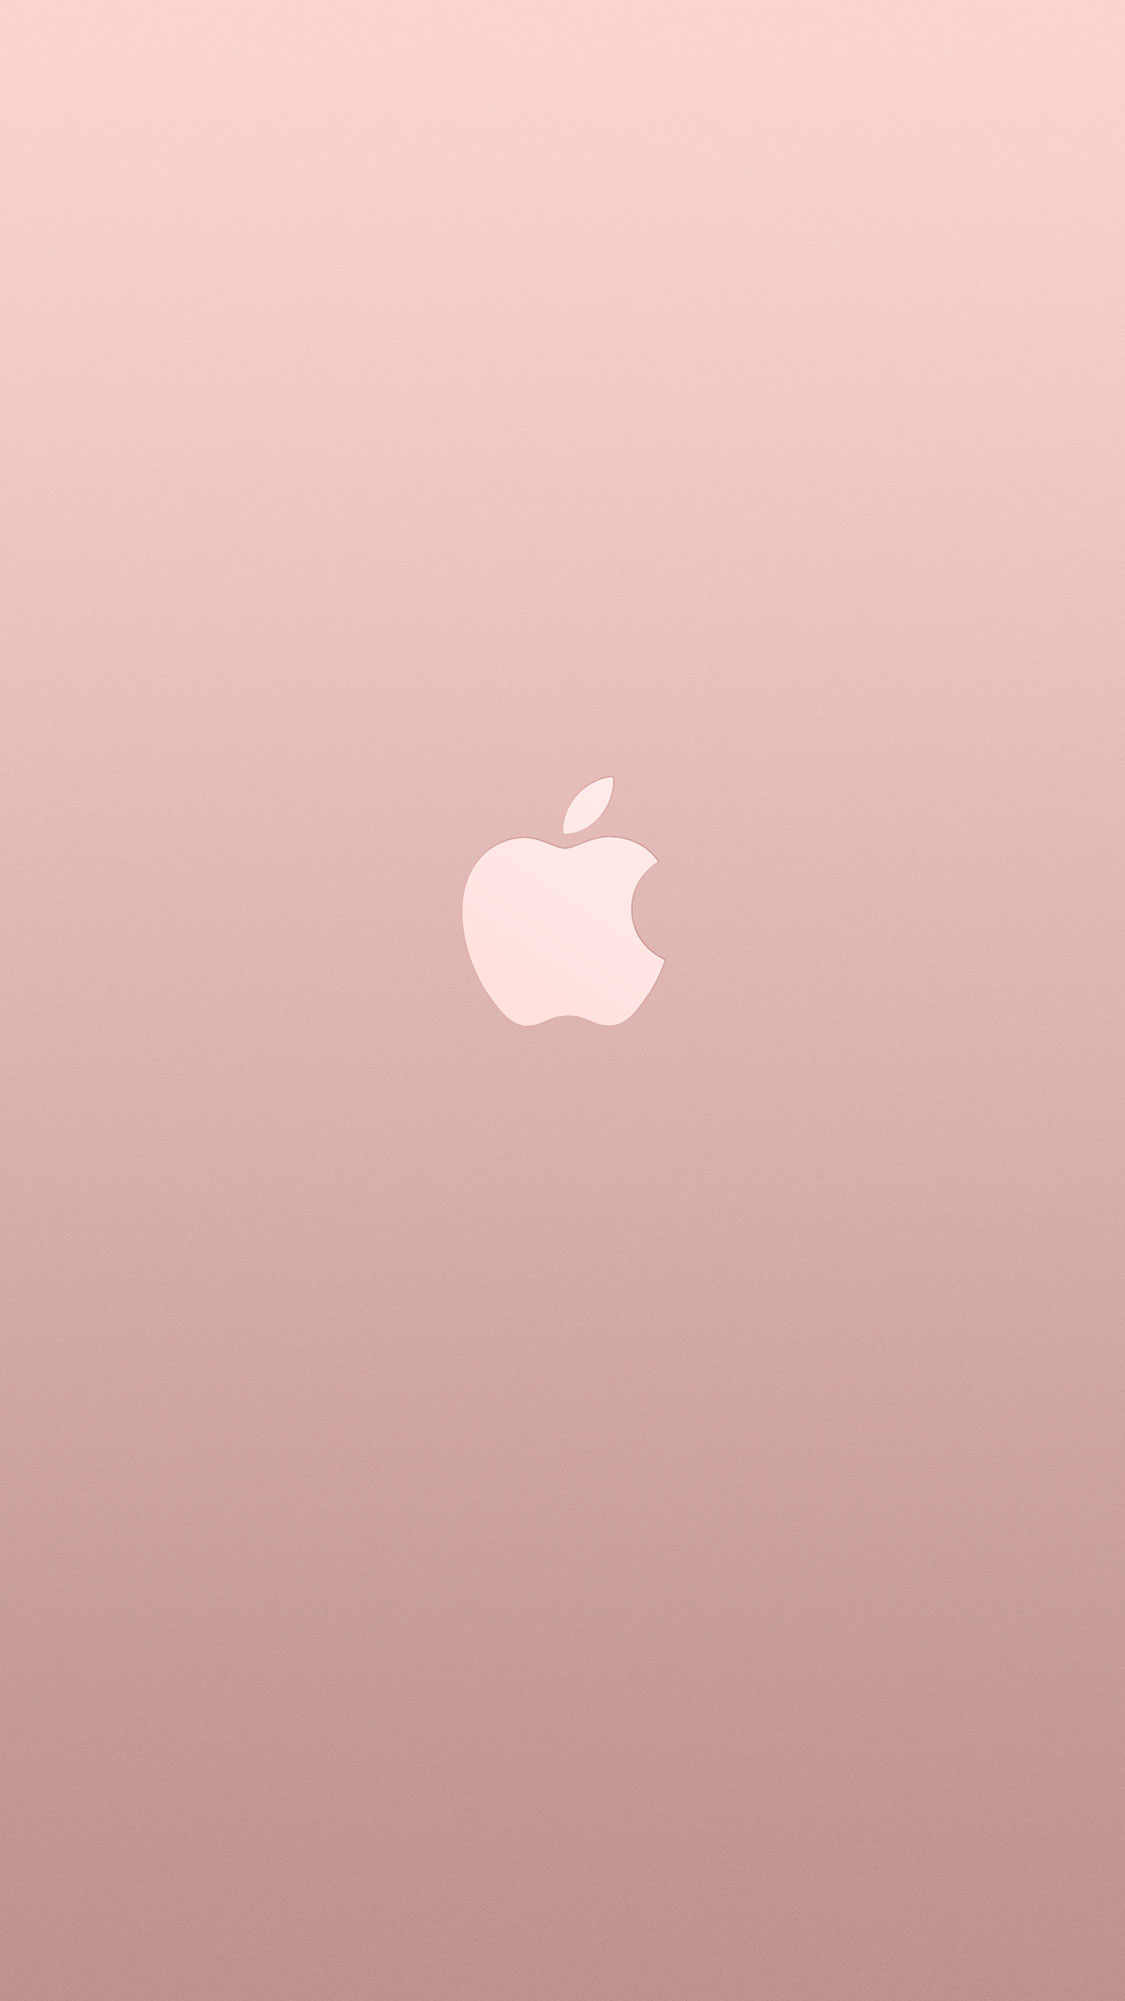 로즈 골드 아이폰 배경 화면,분홍,하늘,복숭아,고요한,삽화